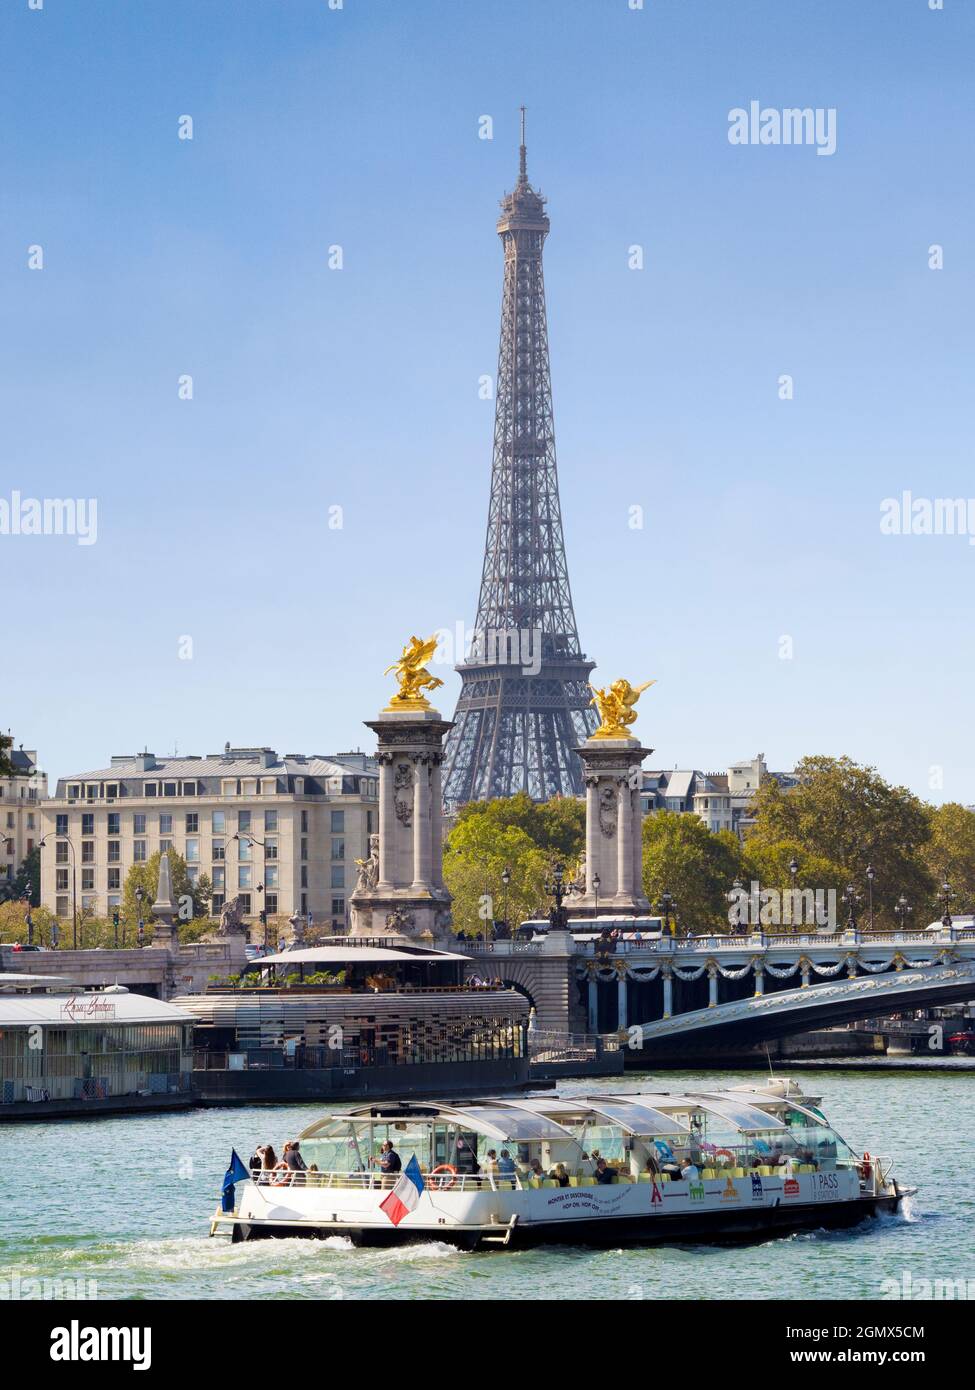 Paris, France - 18 septembre 2018 construite pour l'exposition universelle de 1889, la Tour Eiffel de 324 mètres (1,063 pieds) est devenue une icône culturelle de Paris Banque D'Images